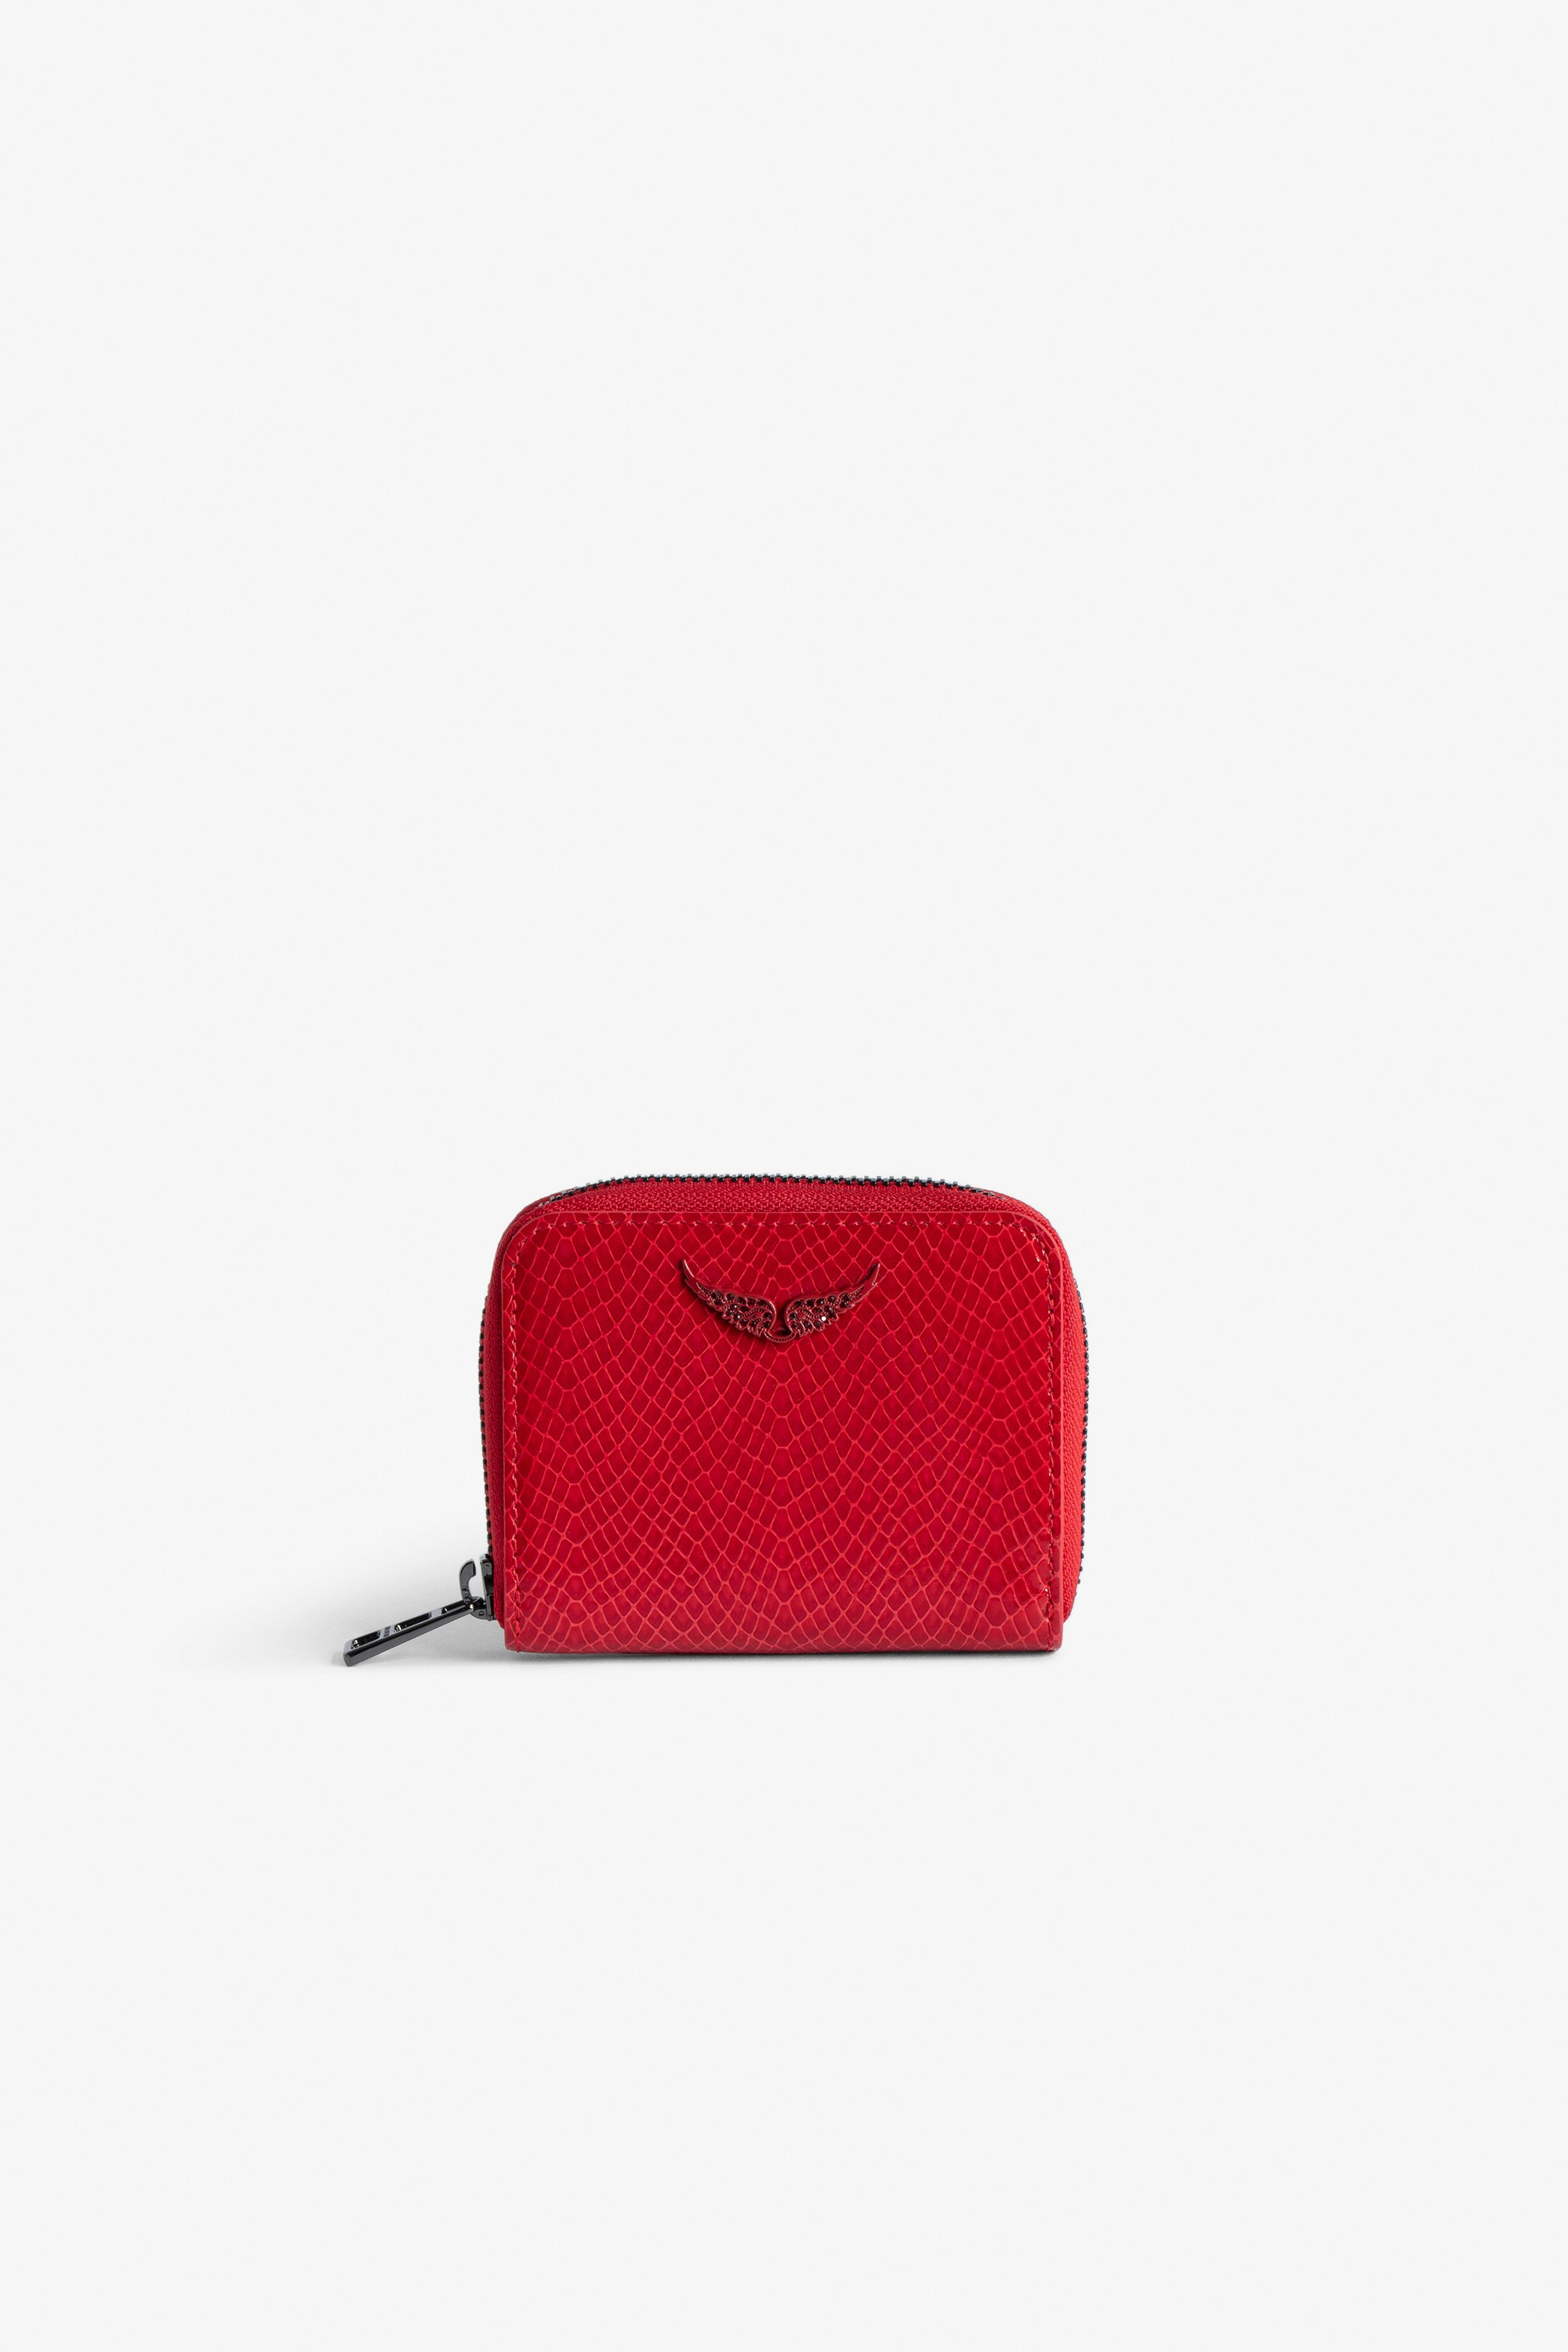 Monedero Mini ZV Glossy Wild Repujado - Cartera roja de piel brillante efecto pitón con colgante de alas para mujer.